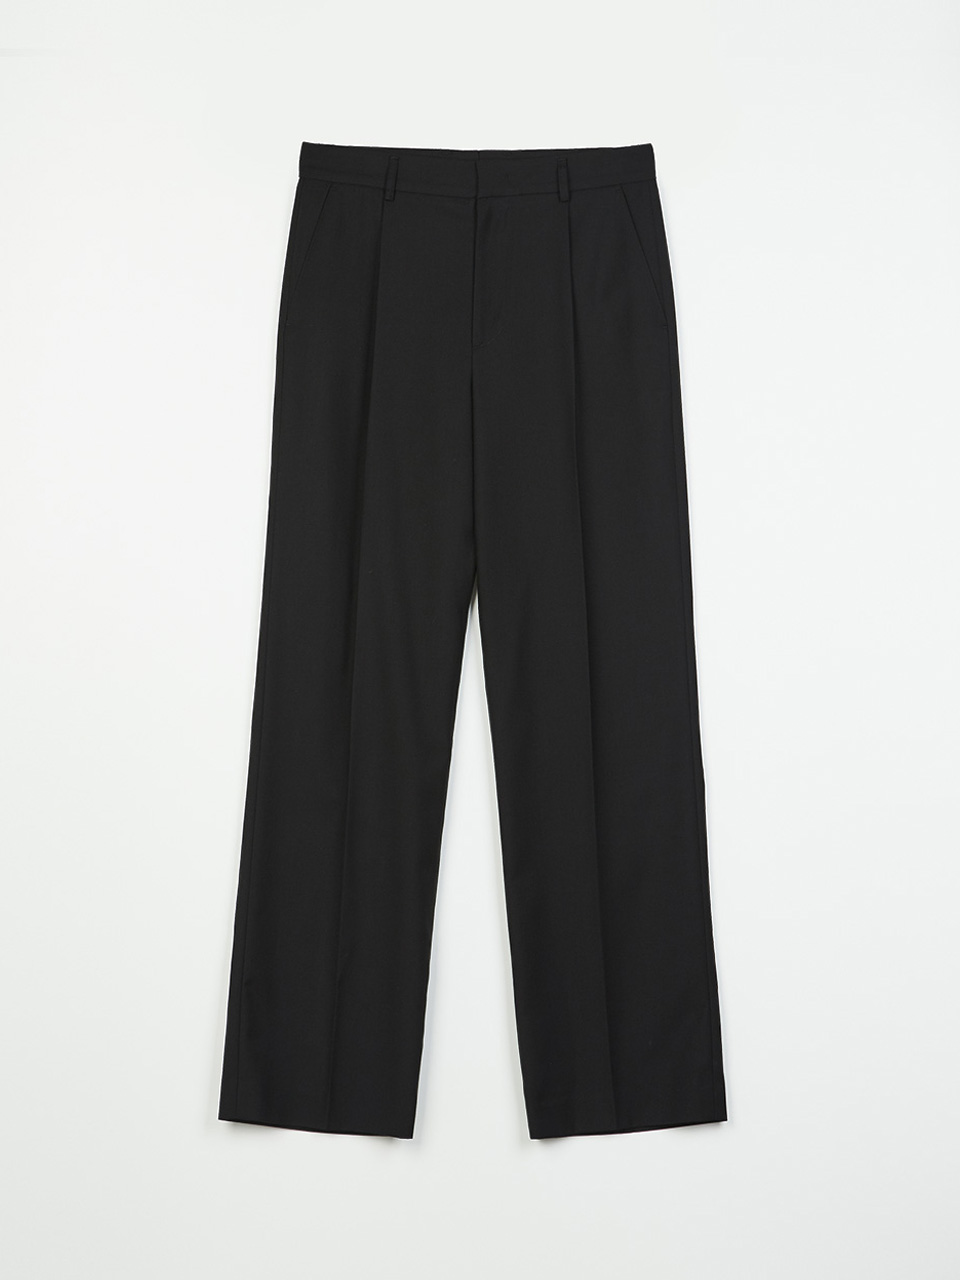 Pleated Wide Pants (Black)